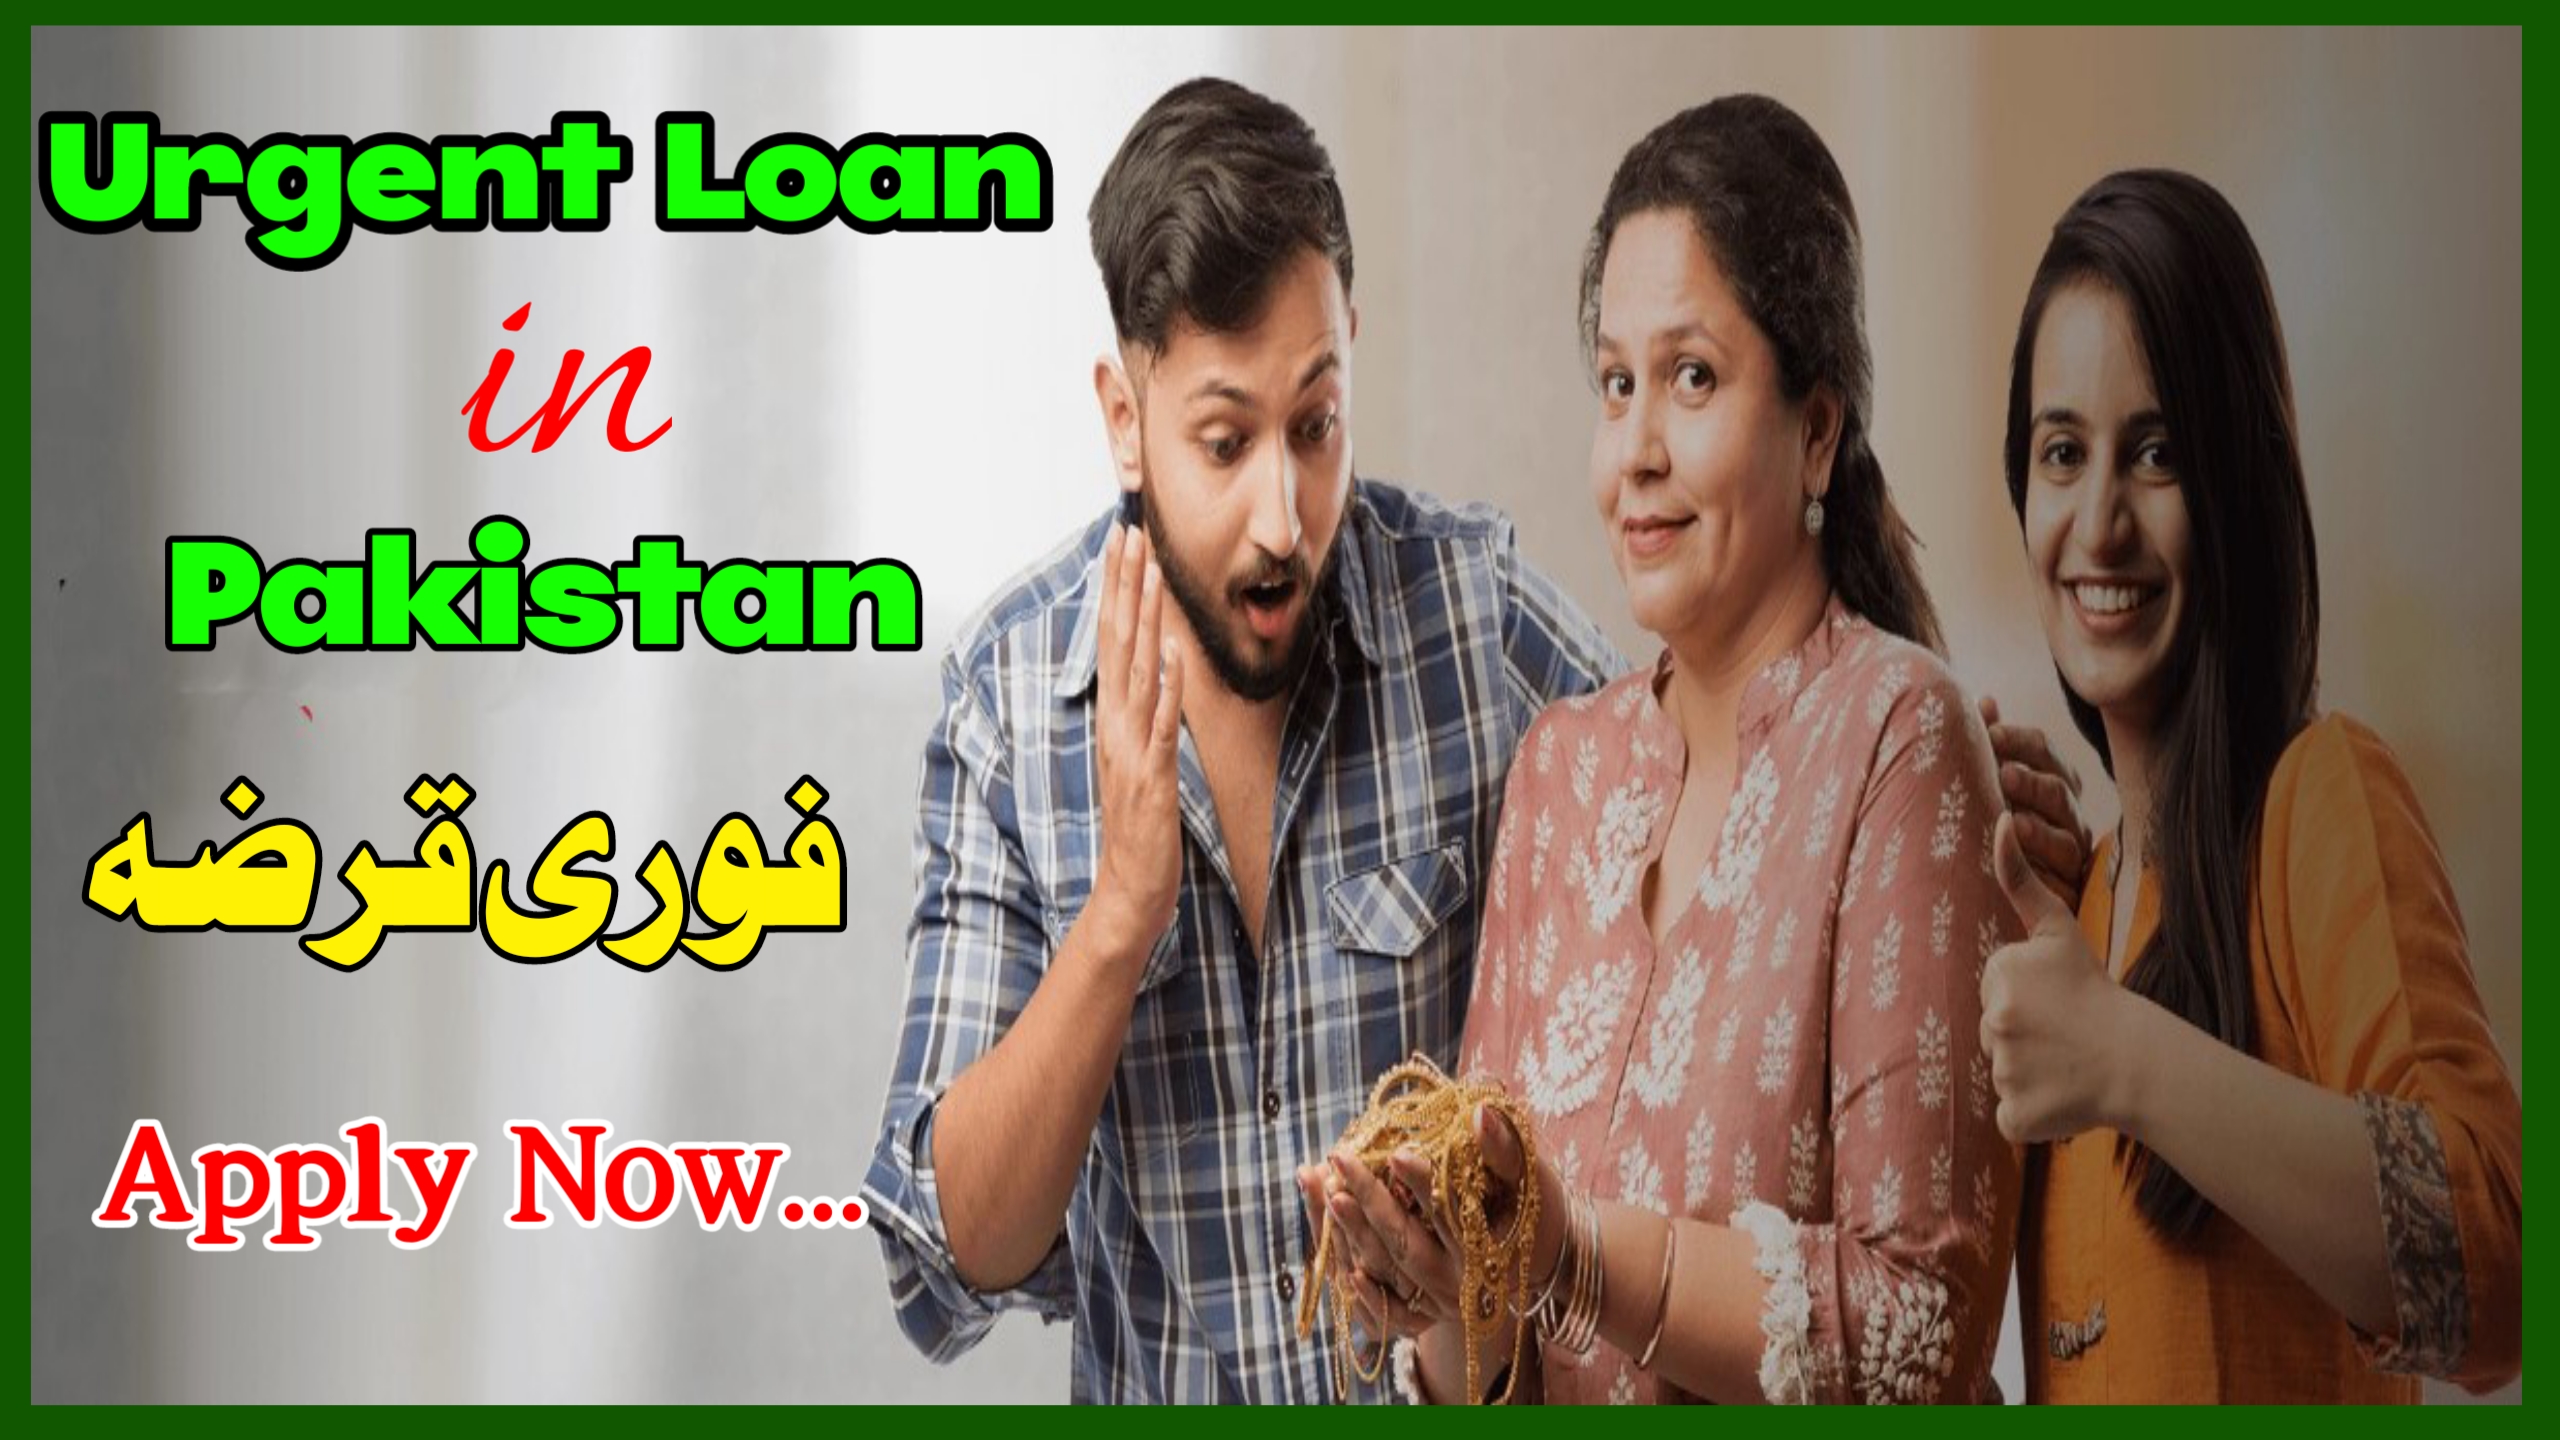 Online Urgent Loan in Pakistan